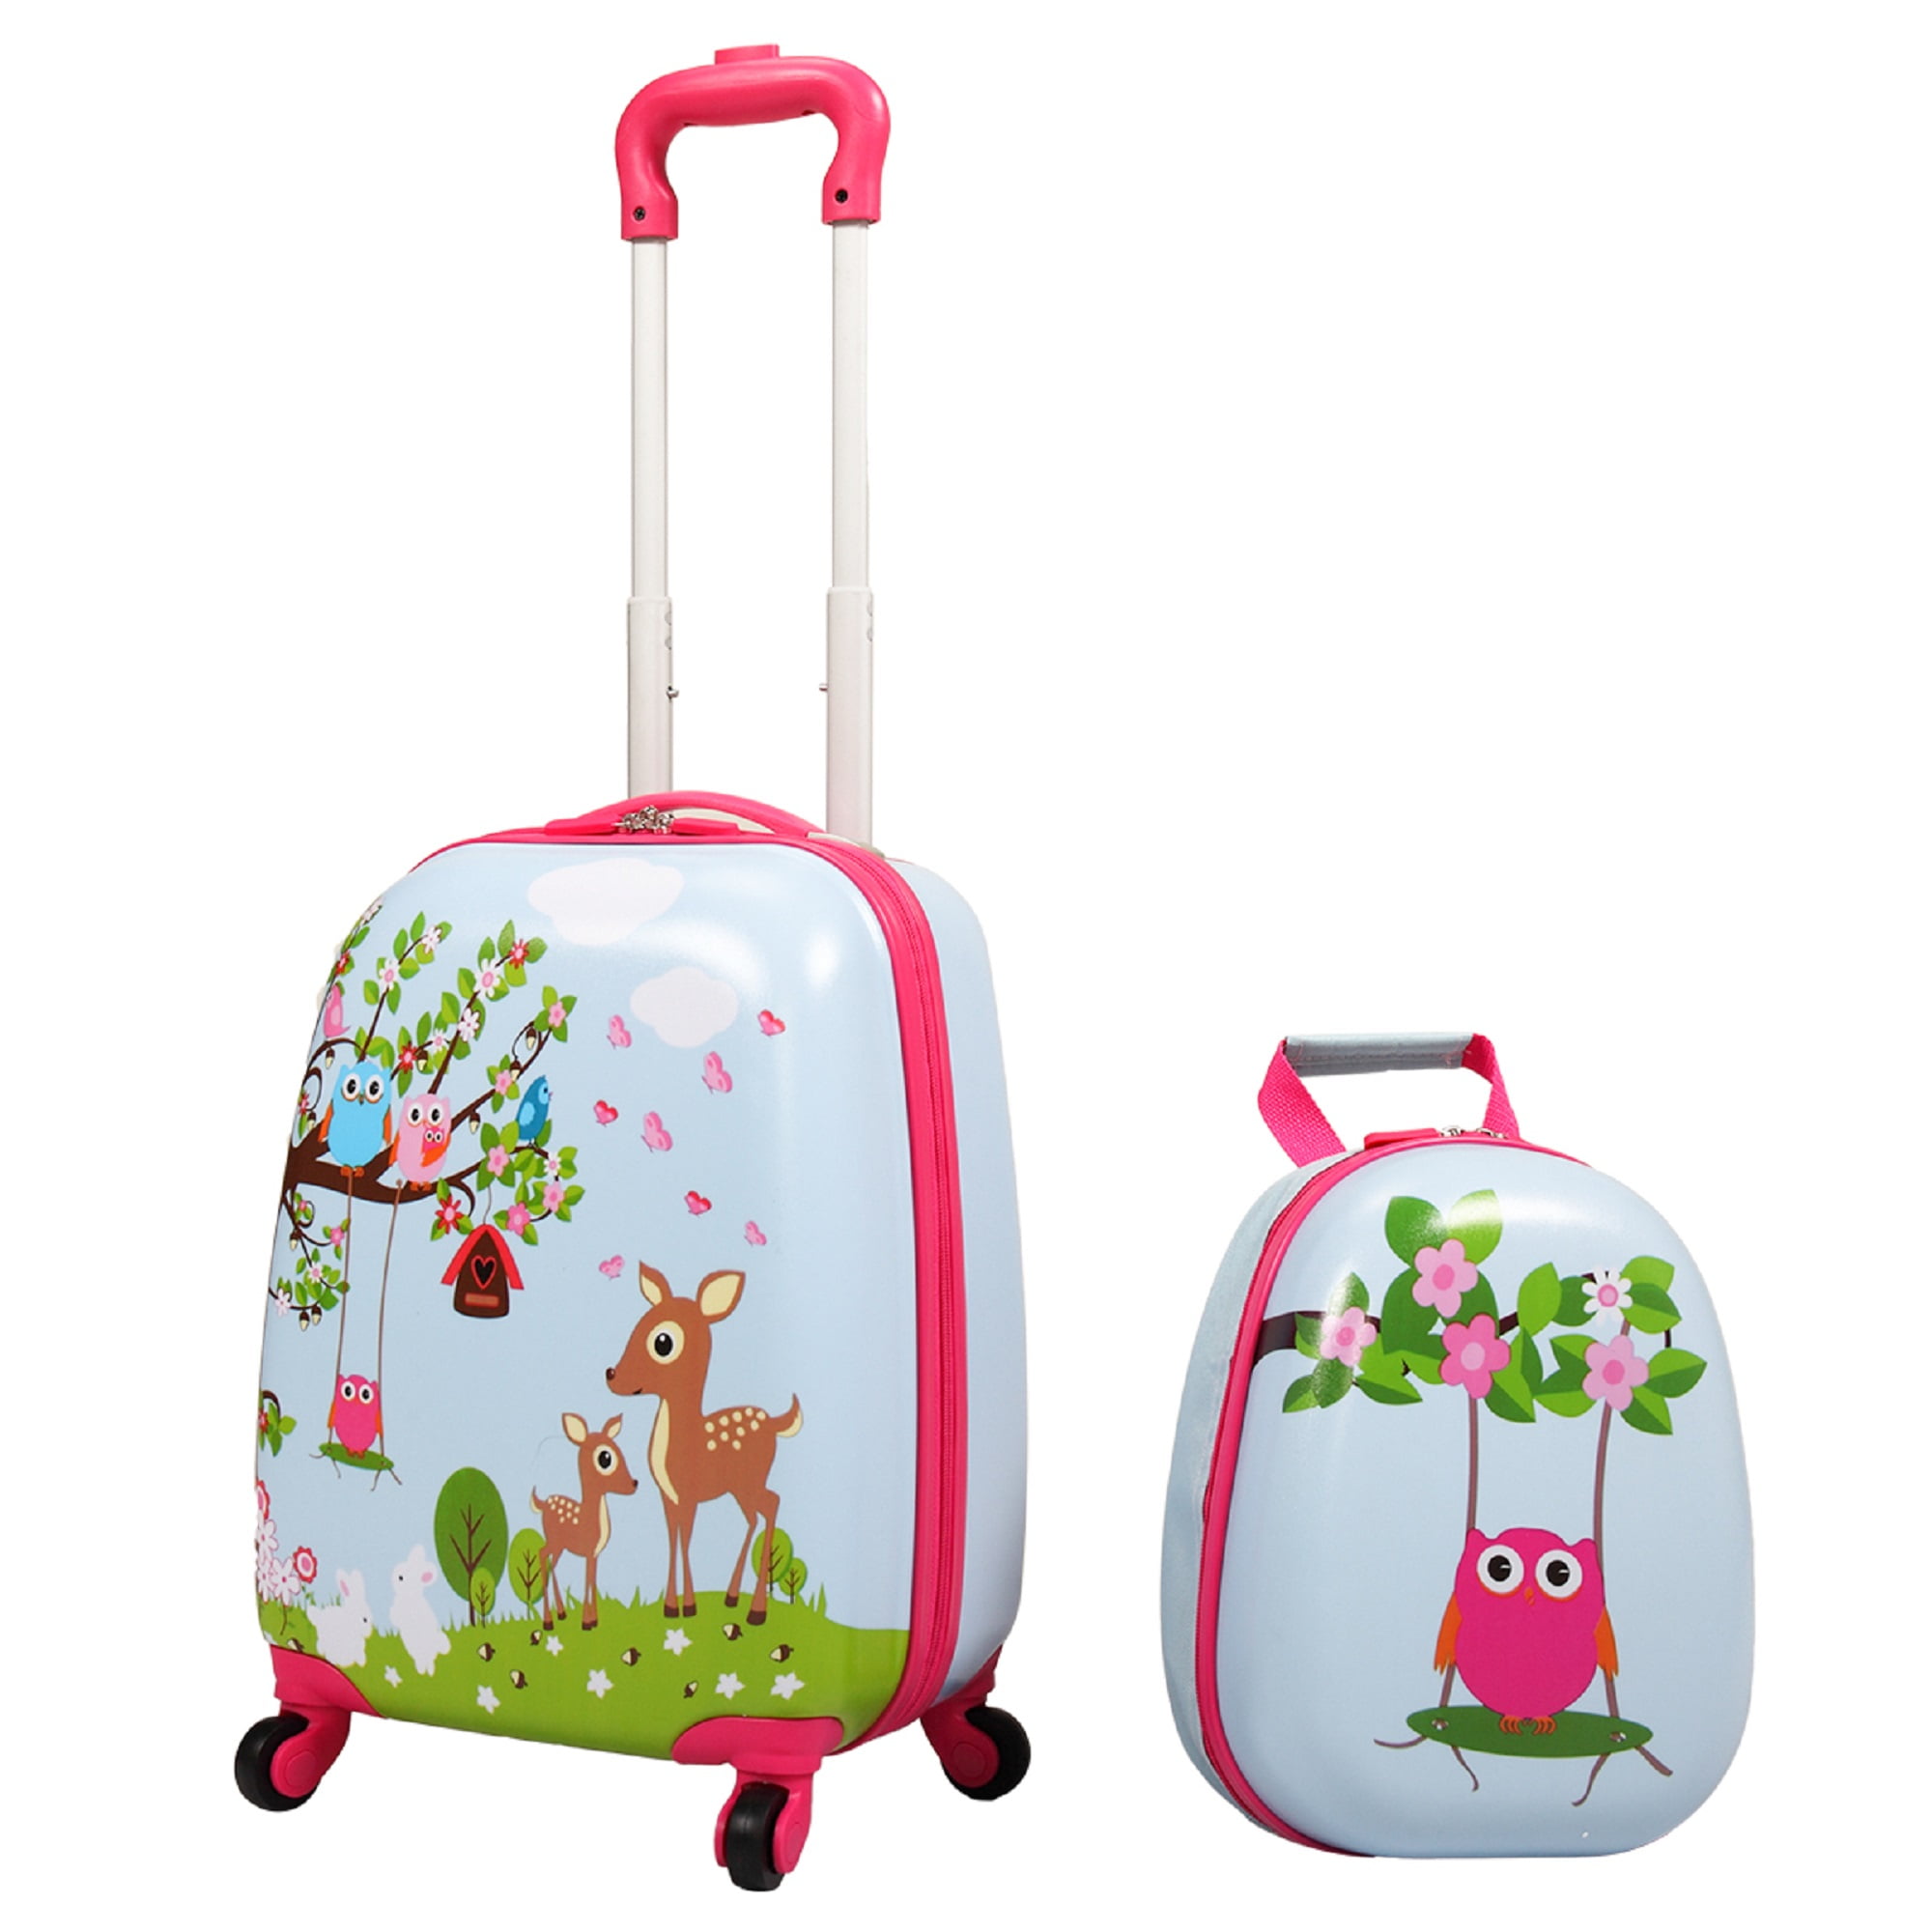 Baby Stroller Organizer Bag Beautiful Animal Designs with Hook & Loop Fasteners Trolley Universal Storage Carriage Bag Deer 